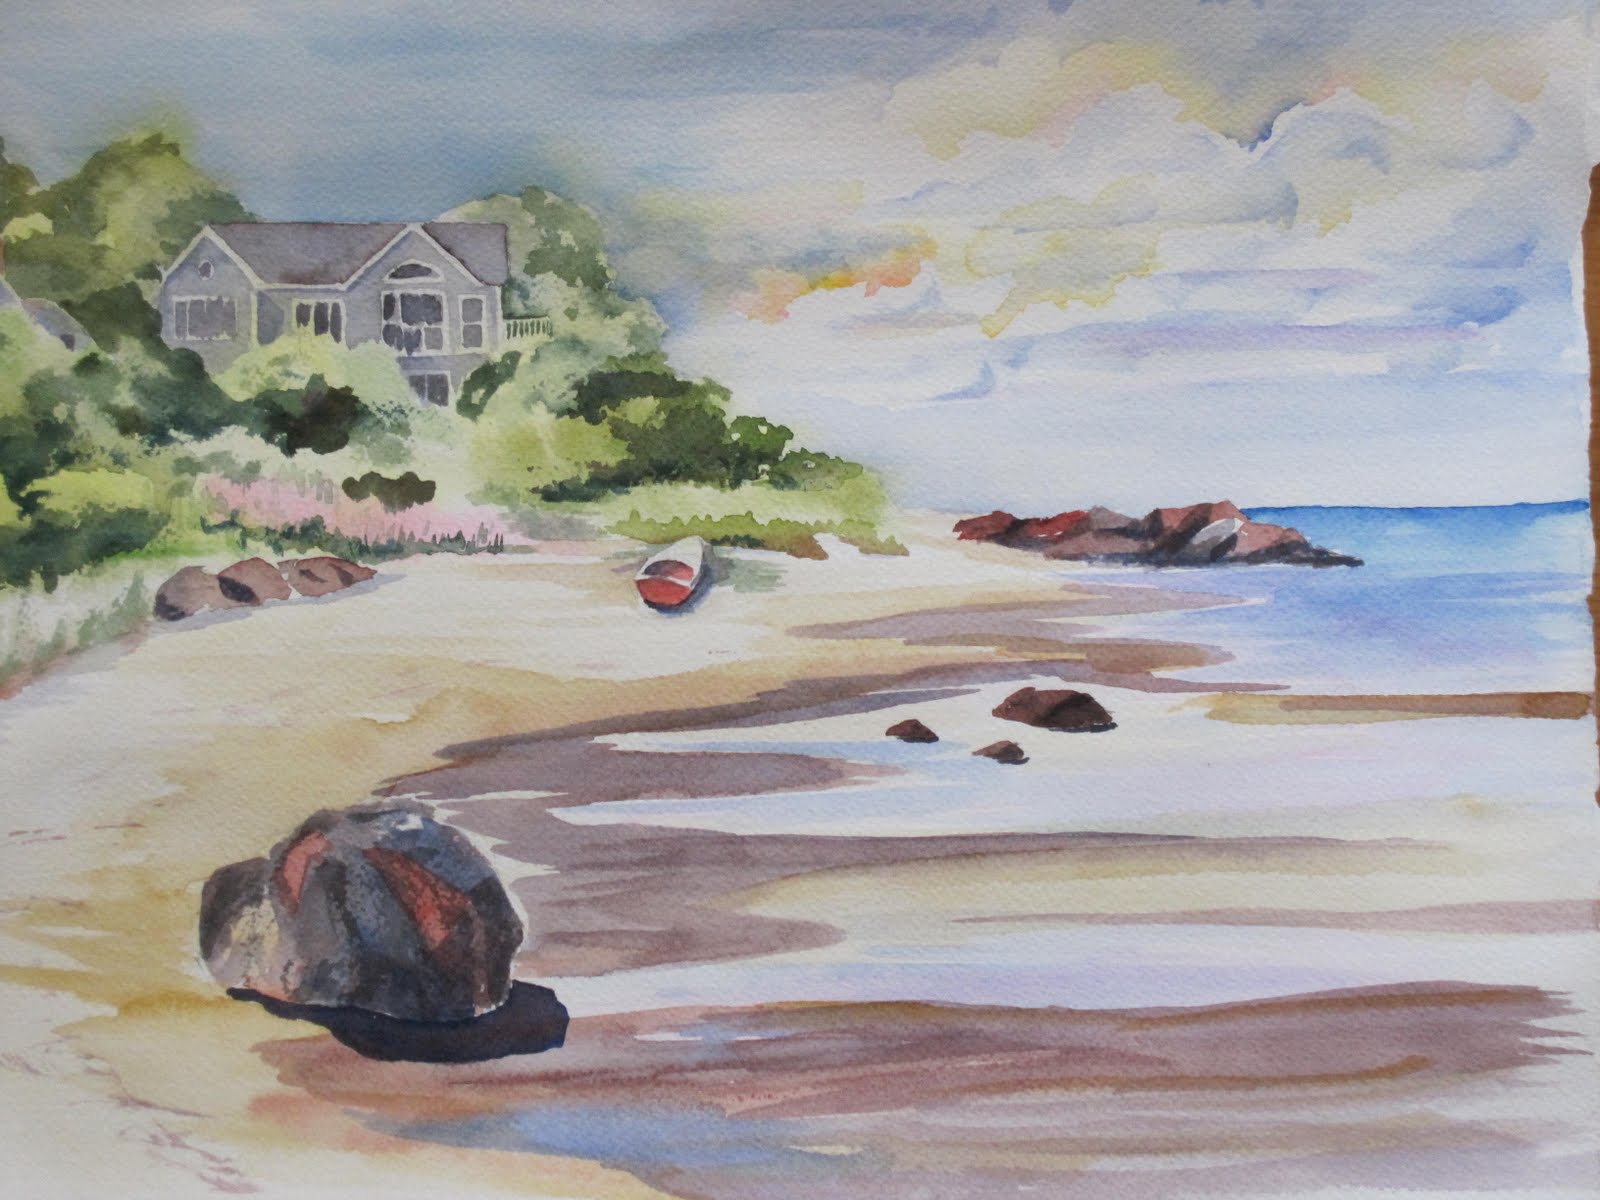 Watercolors by Liana Yarckin: More Cape Cod Scenes